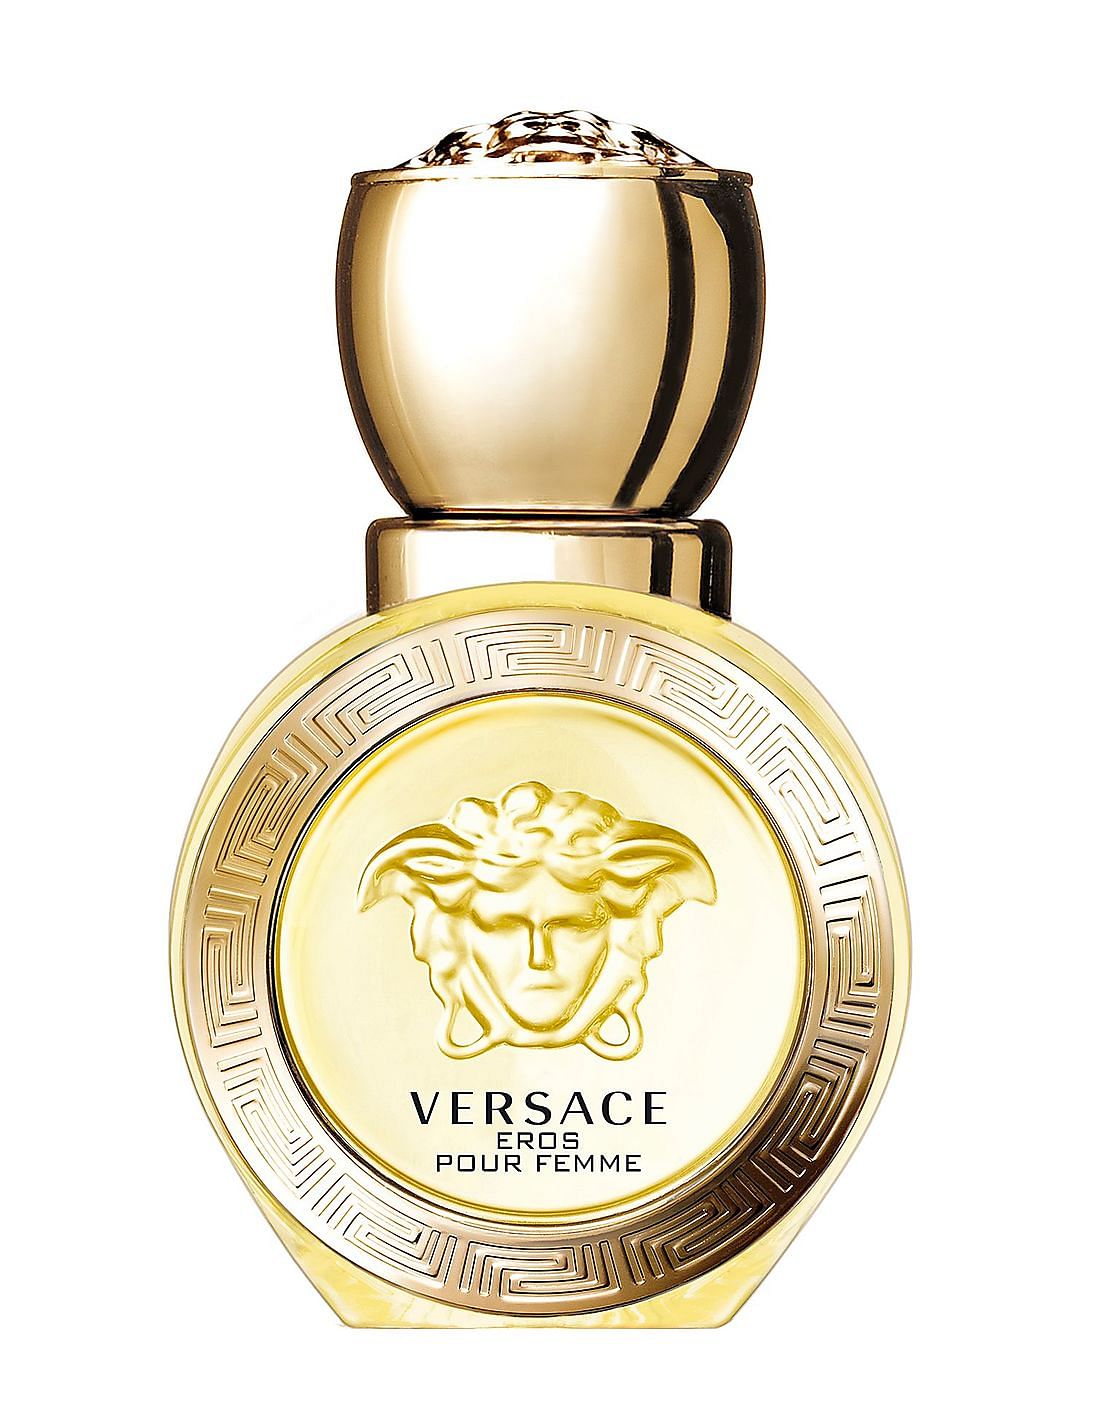 Buy Versace Eros Pour Femme Eau De Toilette Natural Spray - NNNOW.com